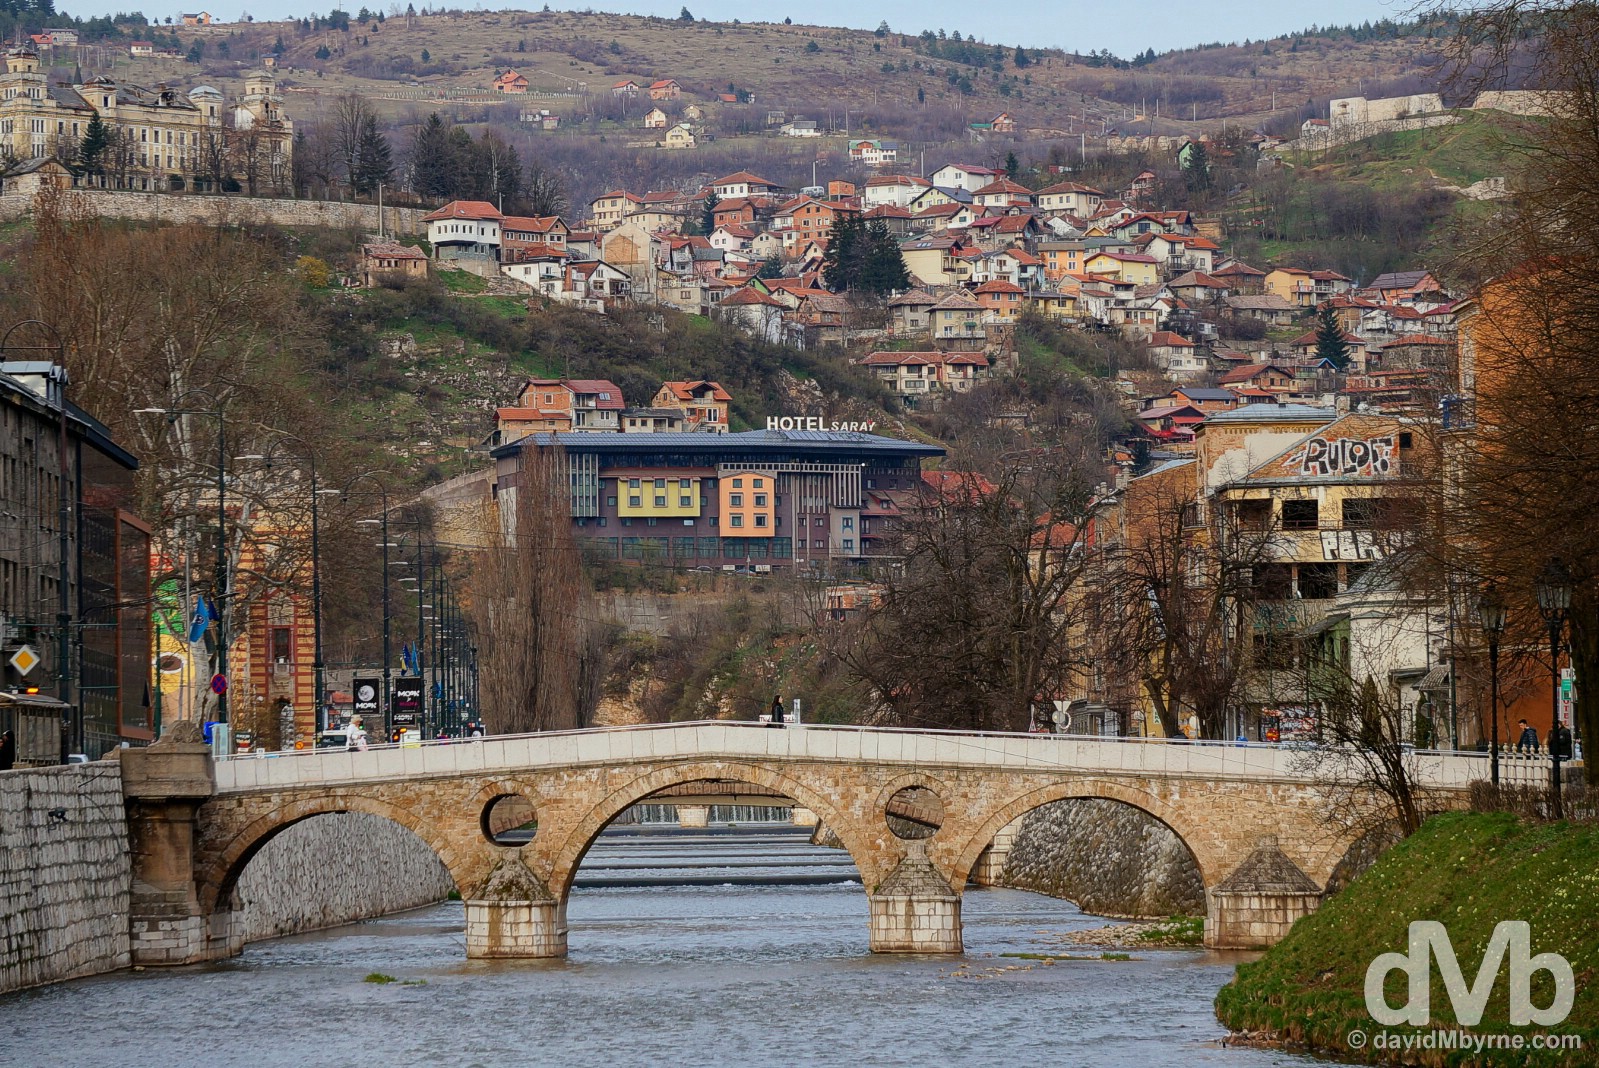 The Latin Bridge crossing the Miljacka River in Sarajevo, Bosnia and Herzegovina. April 4, 2015.